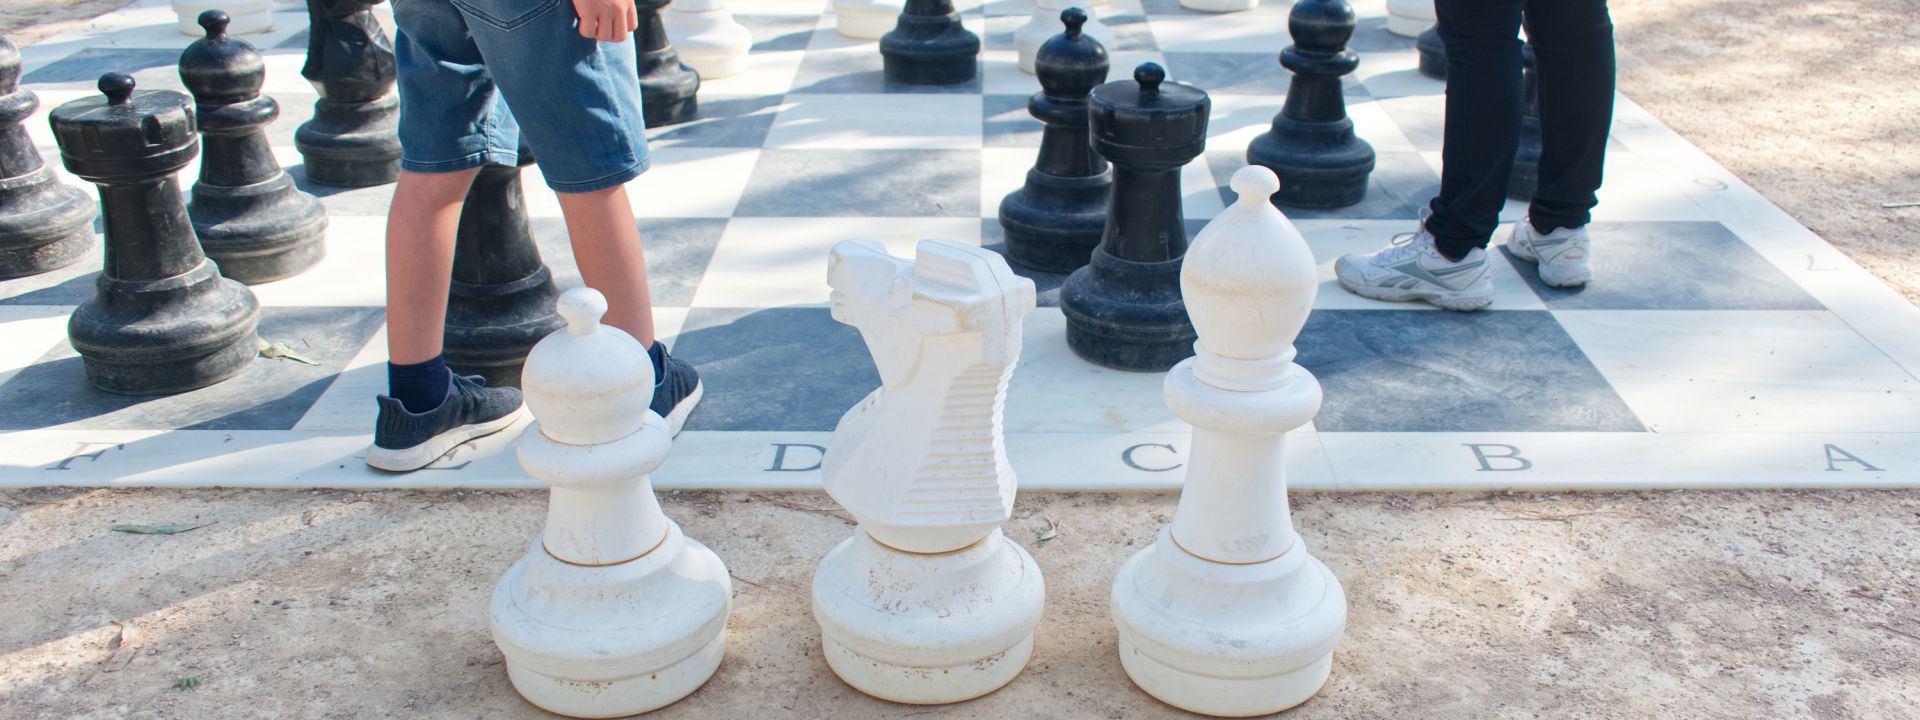 Φωτογραφία από το επιδαπέδιο σκάκι του Πάρκου Σταύρος Νιάρχος